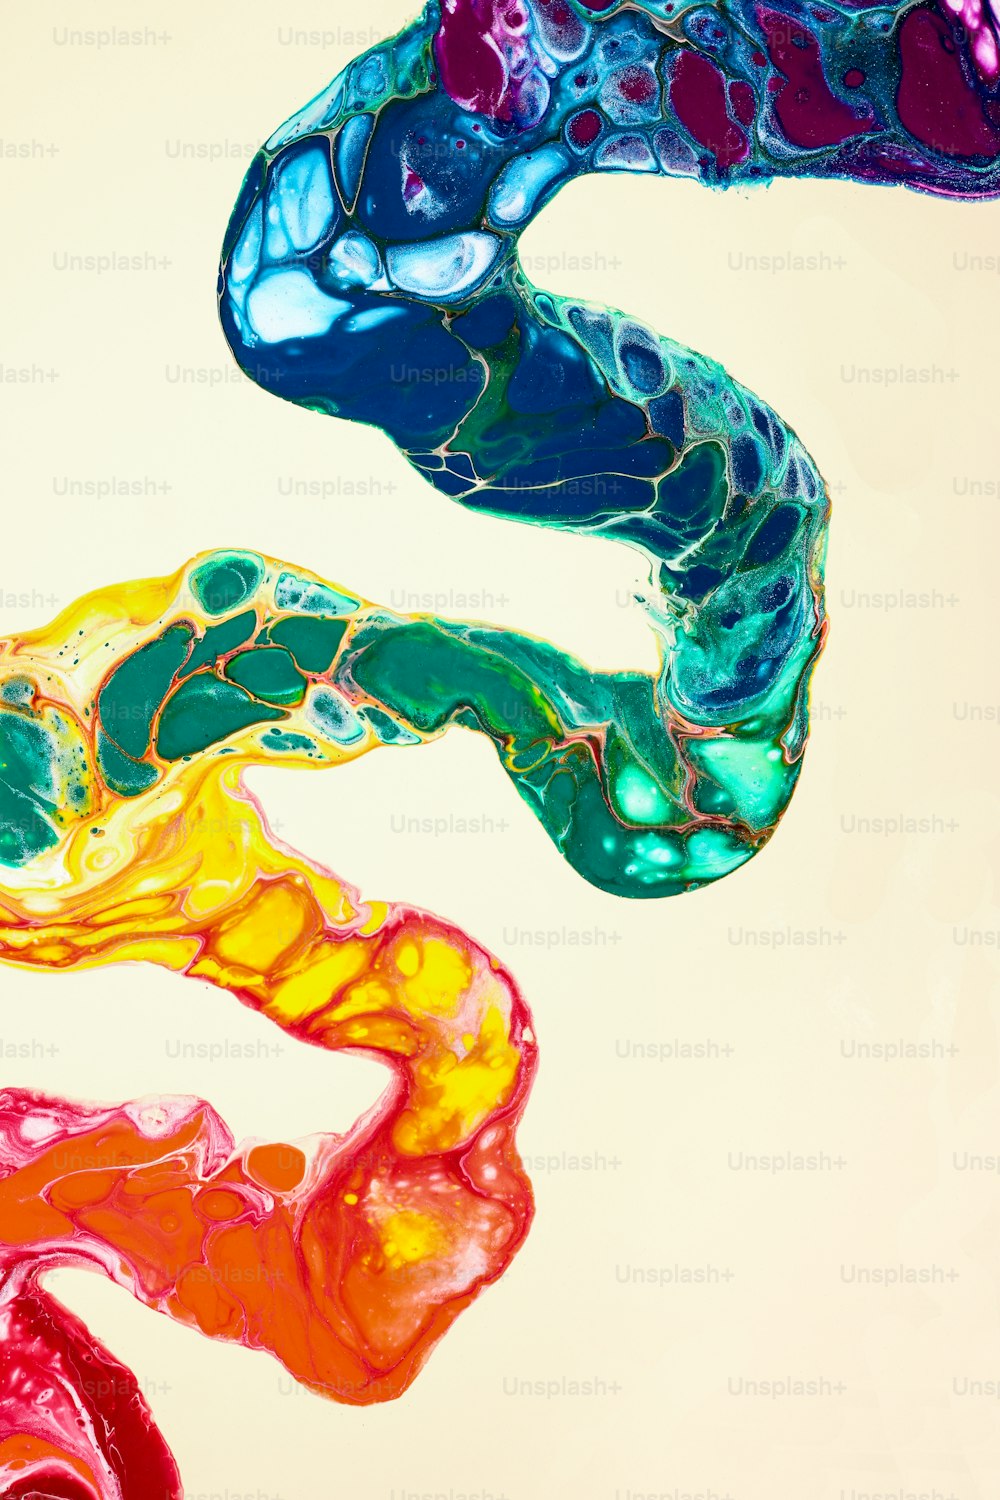 une peinture abstraite de différentes couleurs de liquide